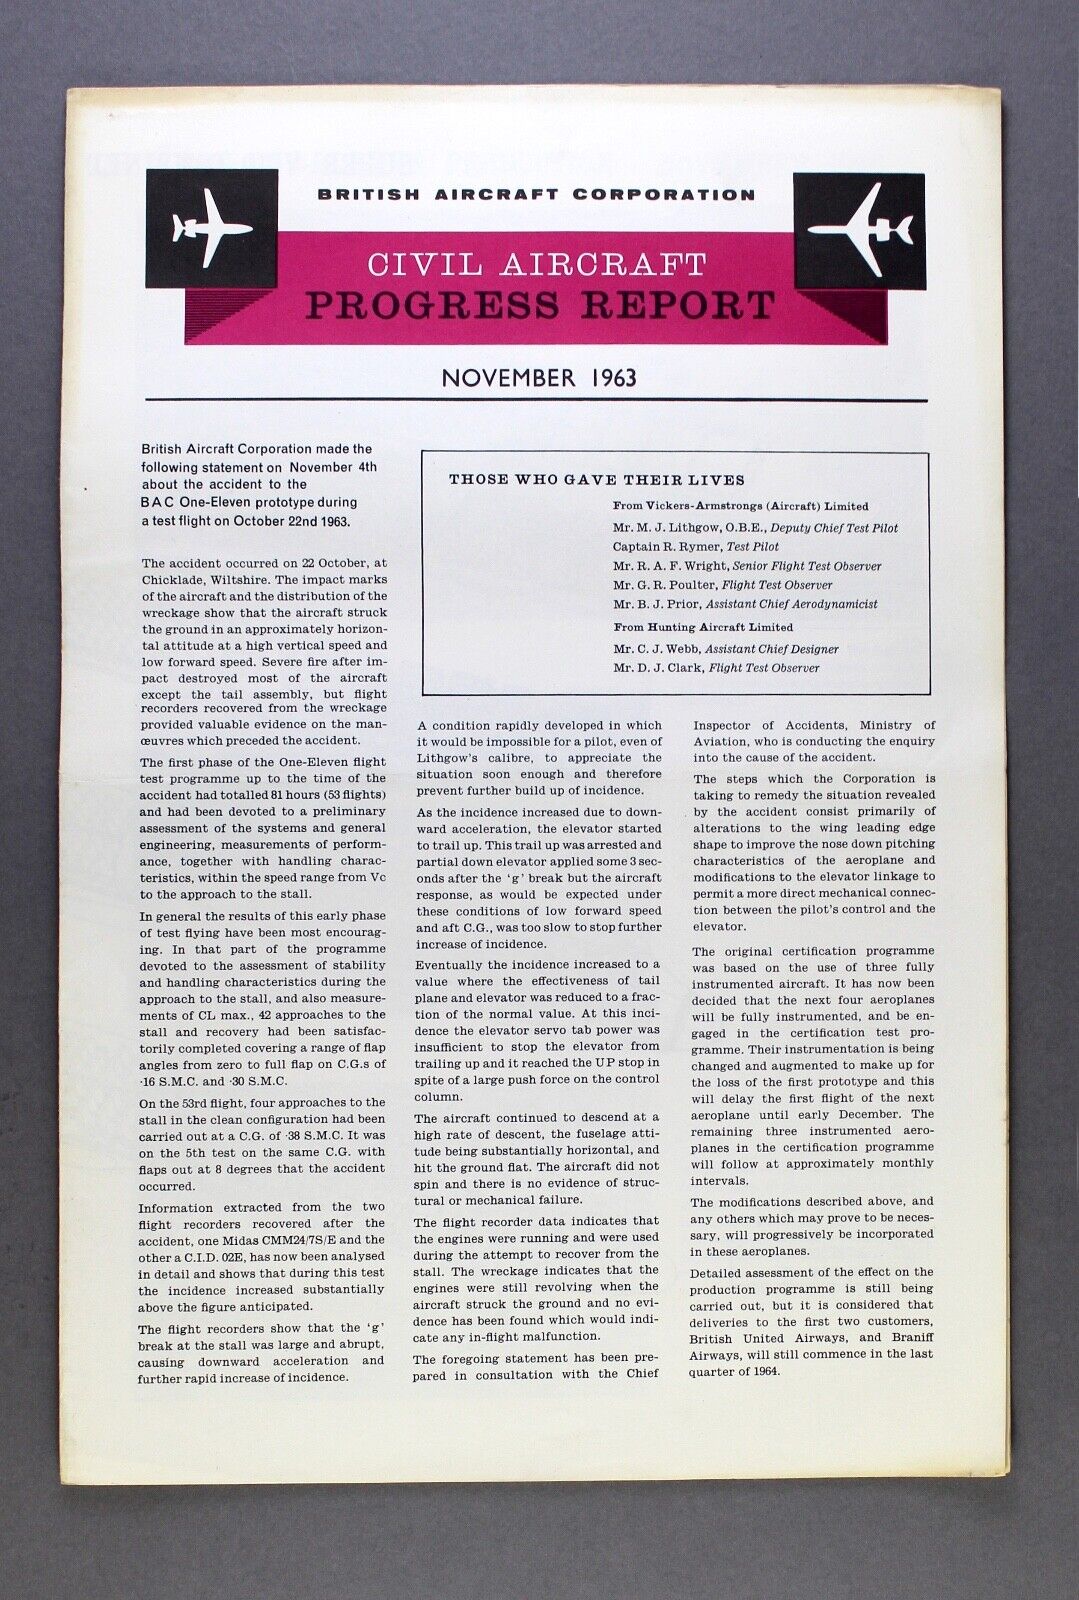 BAC CIVIL AIRCRAFT PROGRESS REPORT NOVEMBER 1963 - ONE ELEVEN - VC10 CUTAWAY 